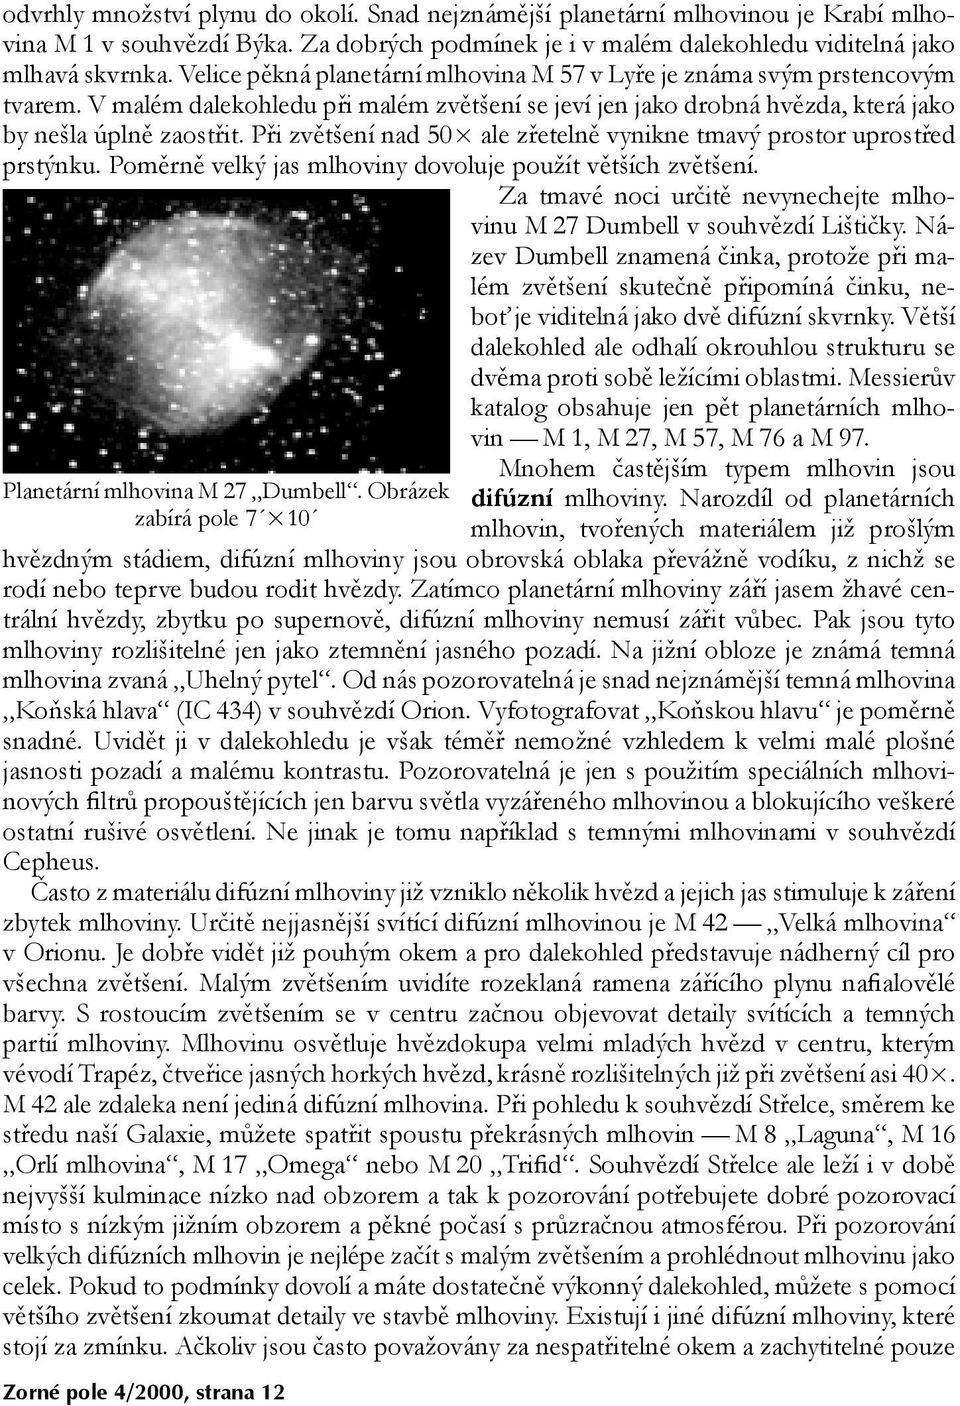 Při zvětšení nad 50 ale zřetelně vynikne tmavý prostor uprostřed prstýnku. Poměrně velký jas mlhoviny dovoluje použít větších zvětšení. Planetární mlhovina M 27 Dumbell.